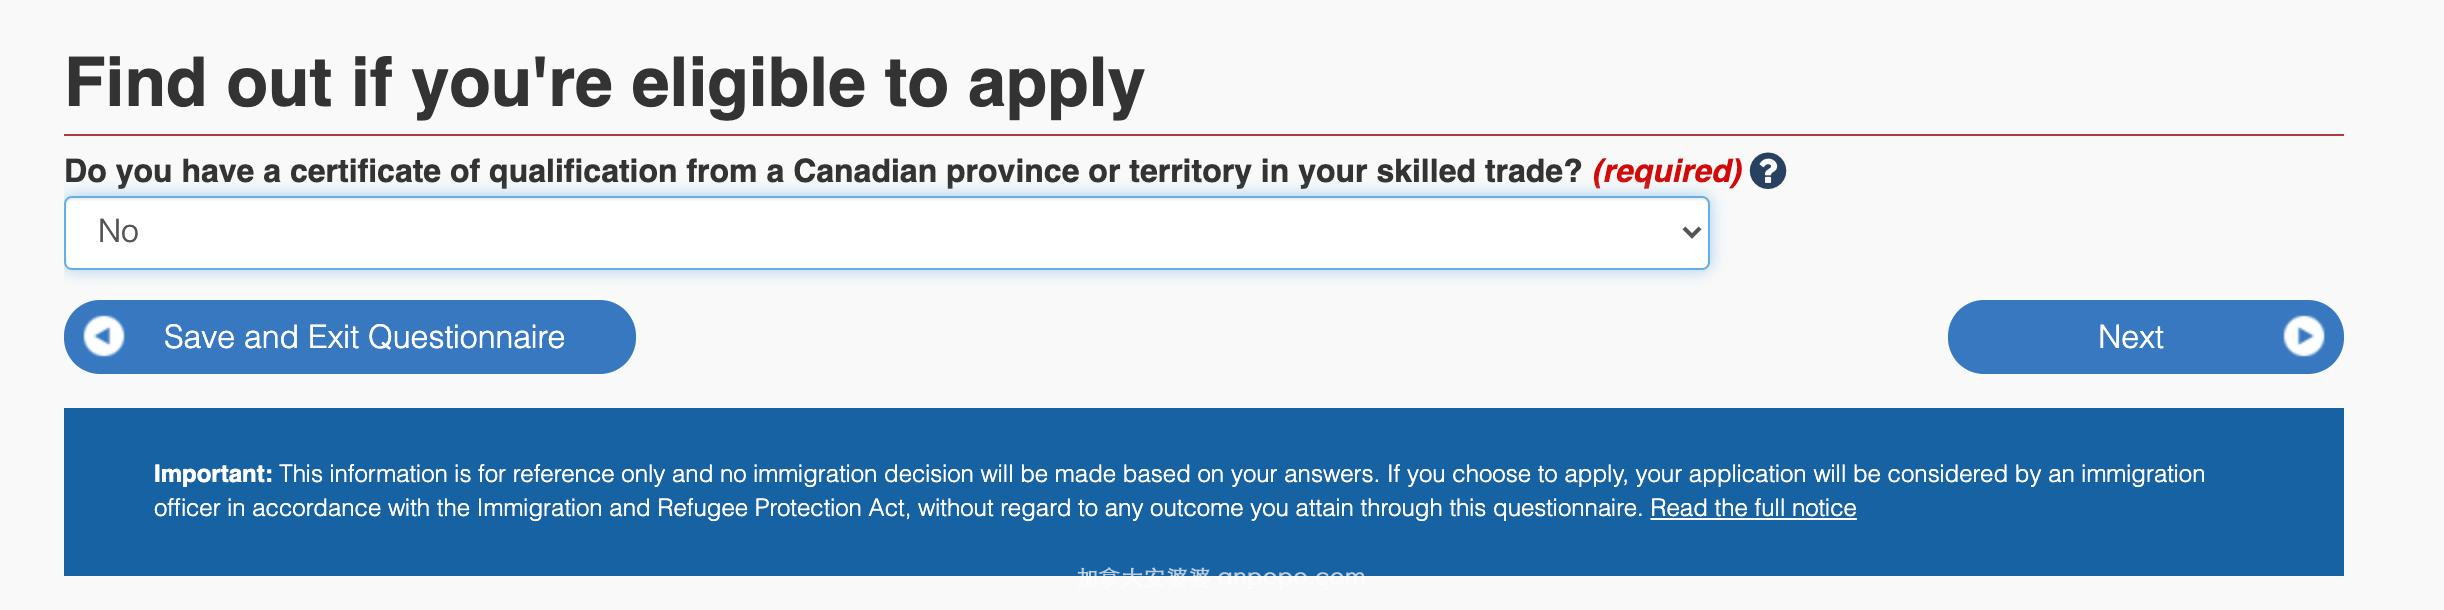 考虑移民加拿大不知道怎么选？移民局官网十分钟一个测试就知道了